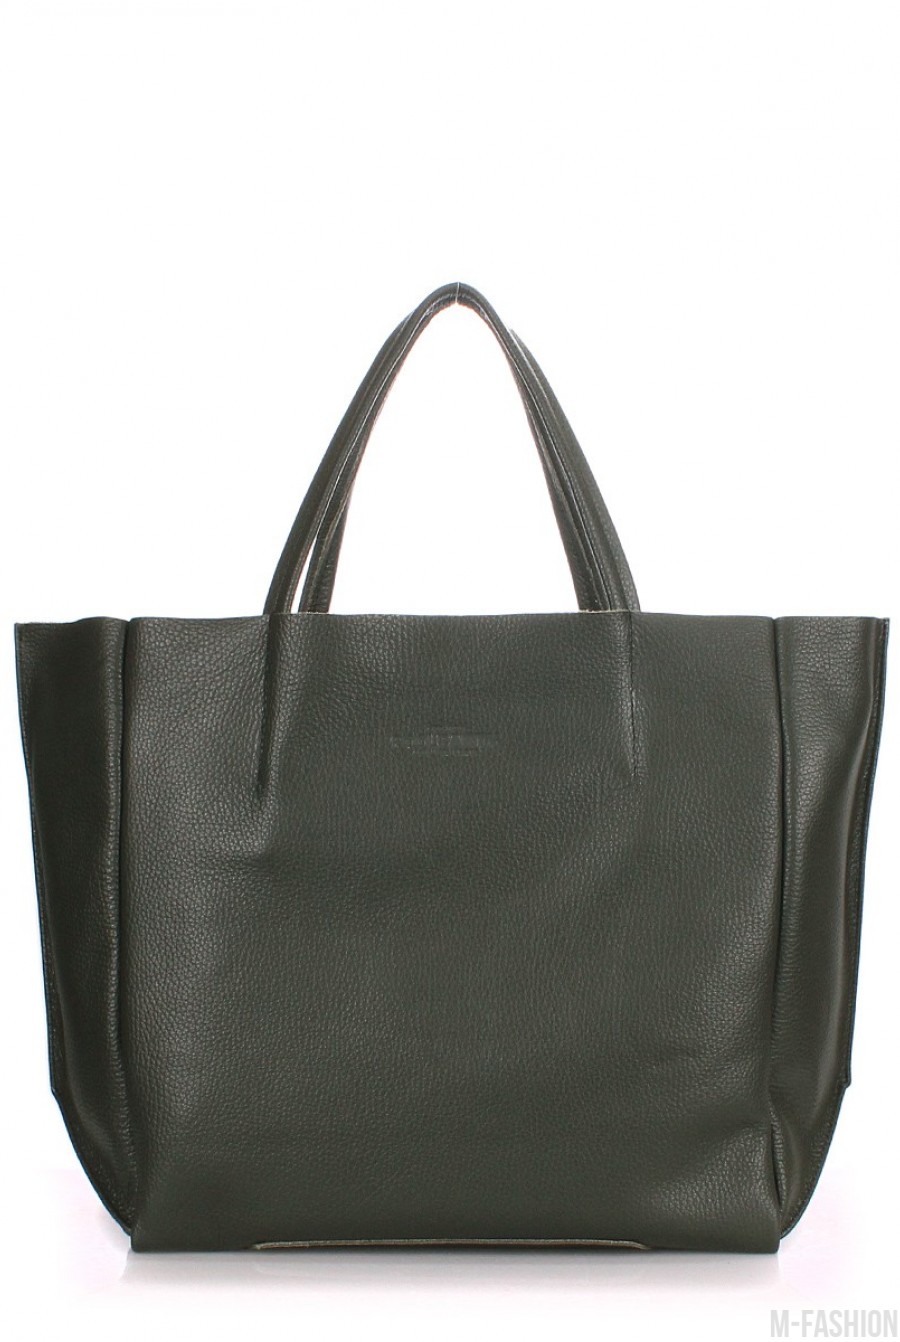 Кожаная зеленая сумка Soho классического дизайна - Фото 1